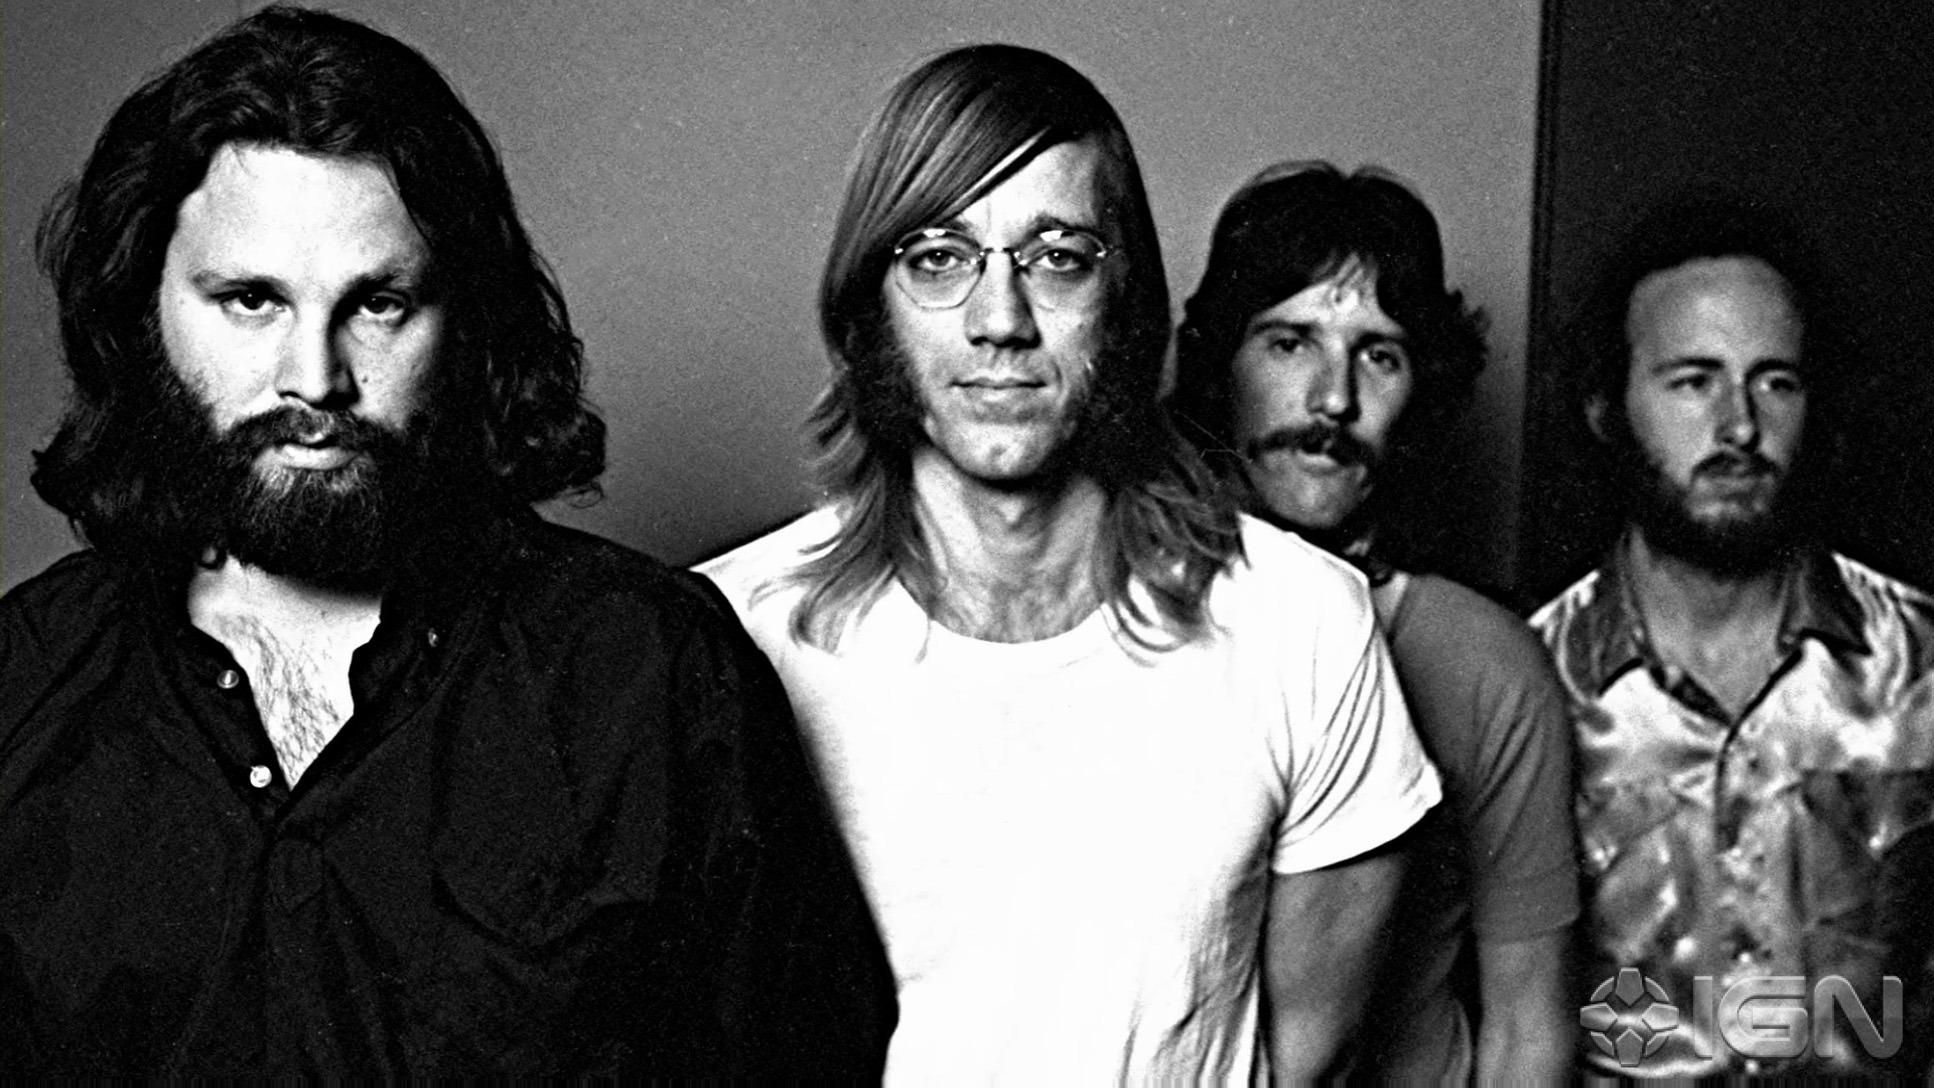 Легендарная группа The Doors будет судиться с сестрами Дженнер